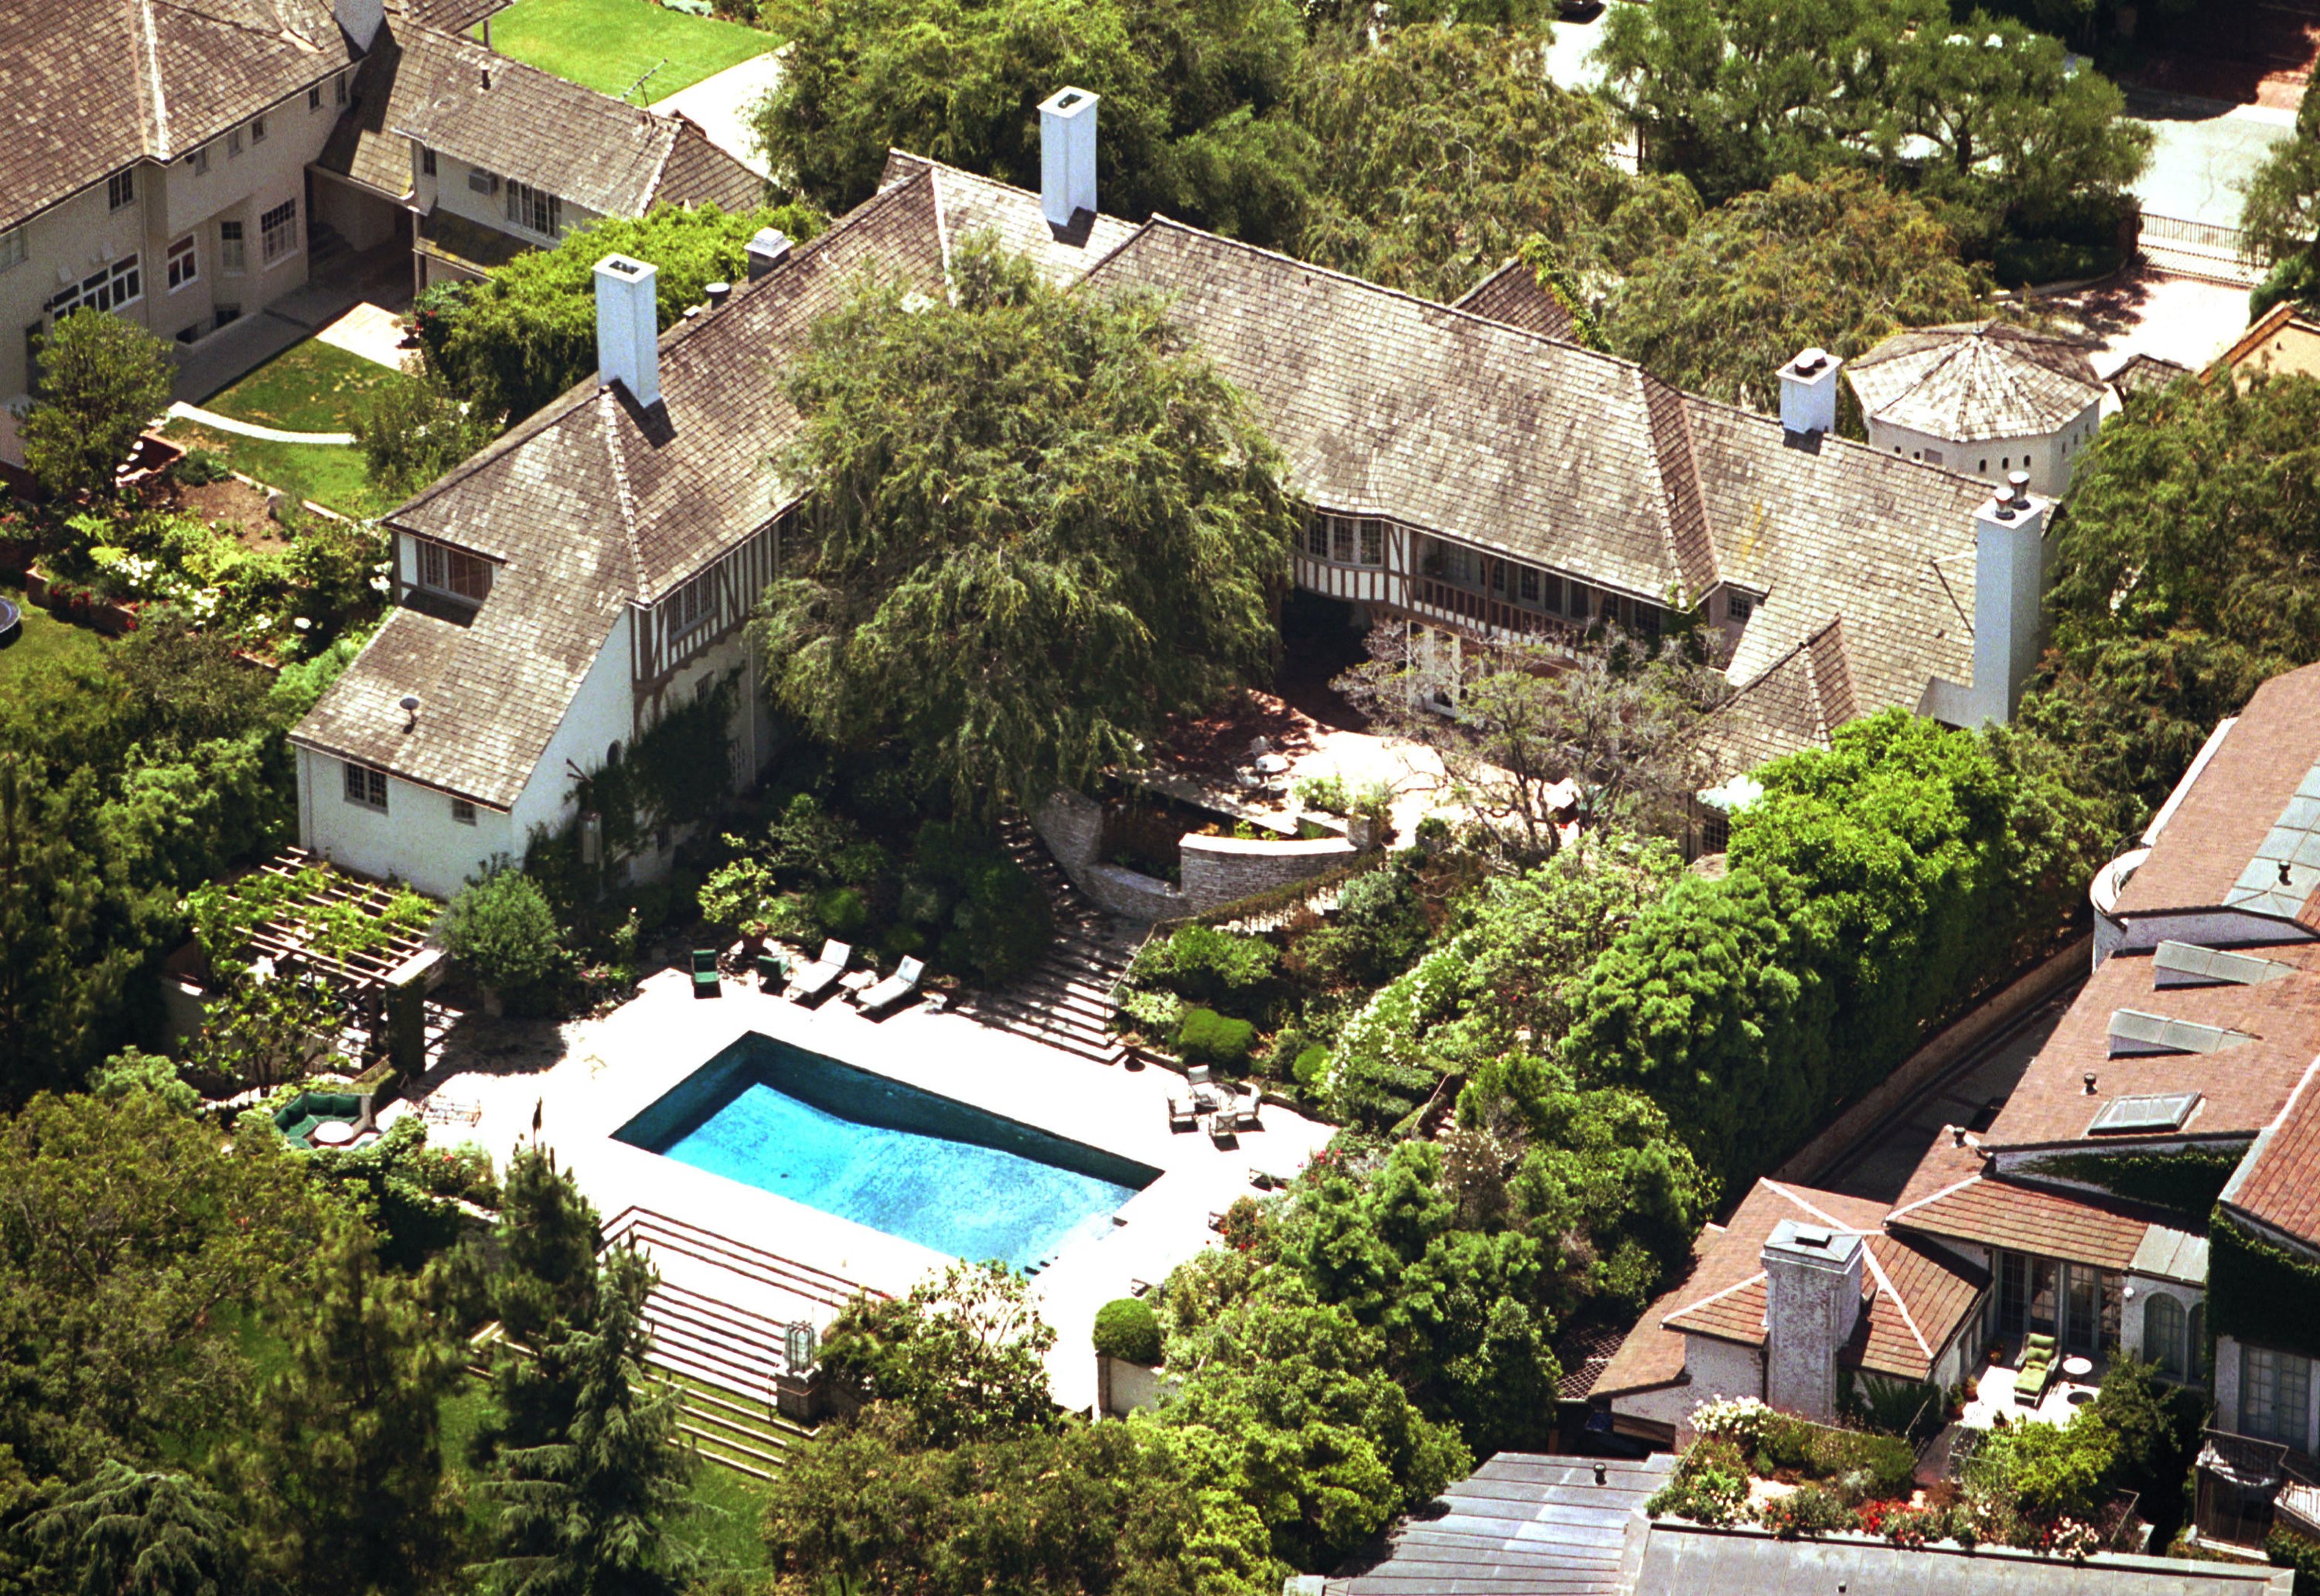 La maison de Brad Pitt et Jennifer Aniston vue d'avion le 18 juin 2001 à Malibu, Californie | Source : Getty Images